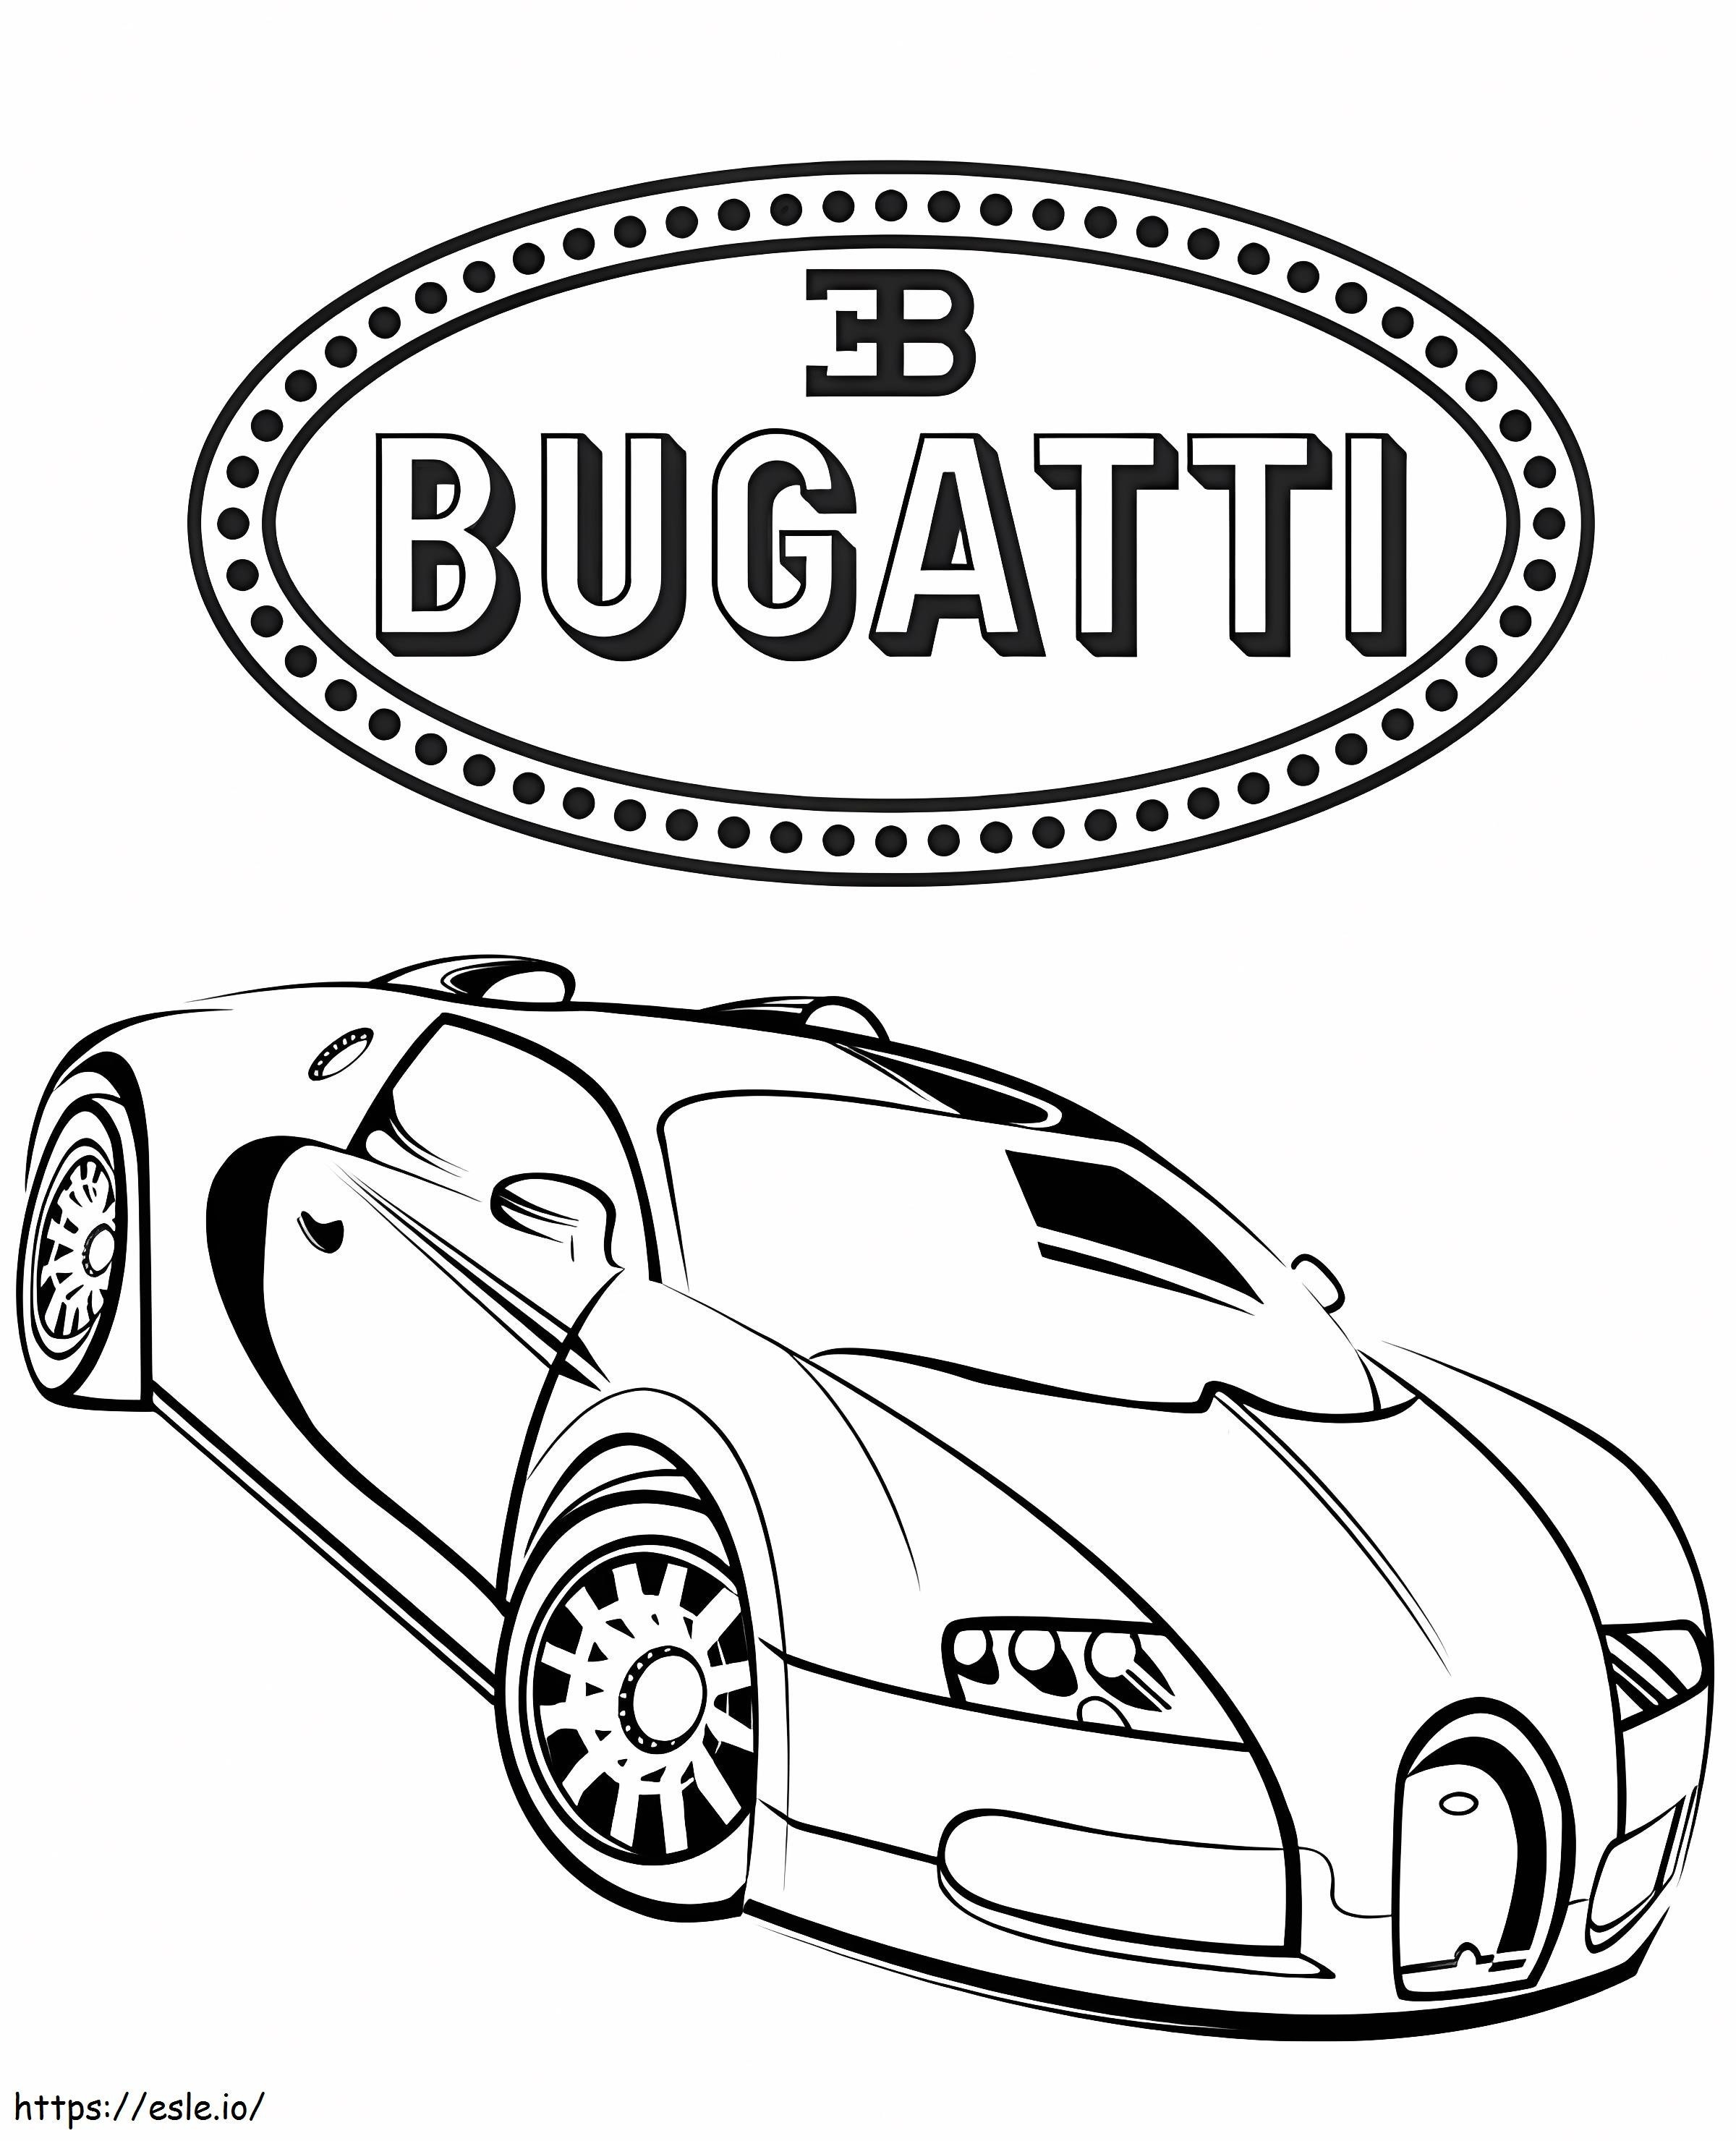 Samochód Bugatti 3 kolorowanka